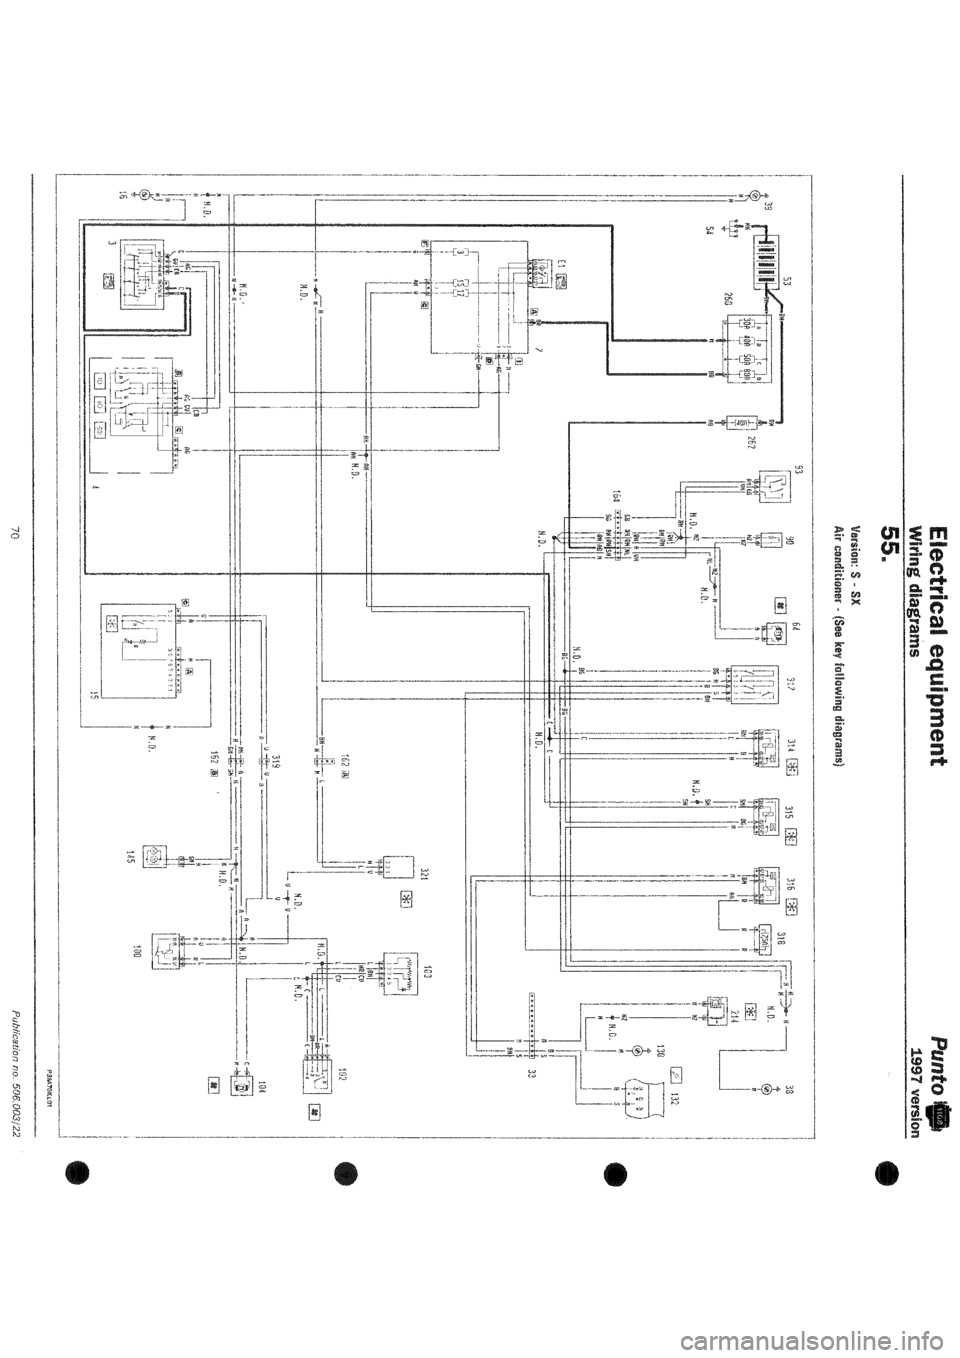 FIAT PUNTO 1997 176 / 1.G Wiring Diagrams Workshop Manual 